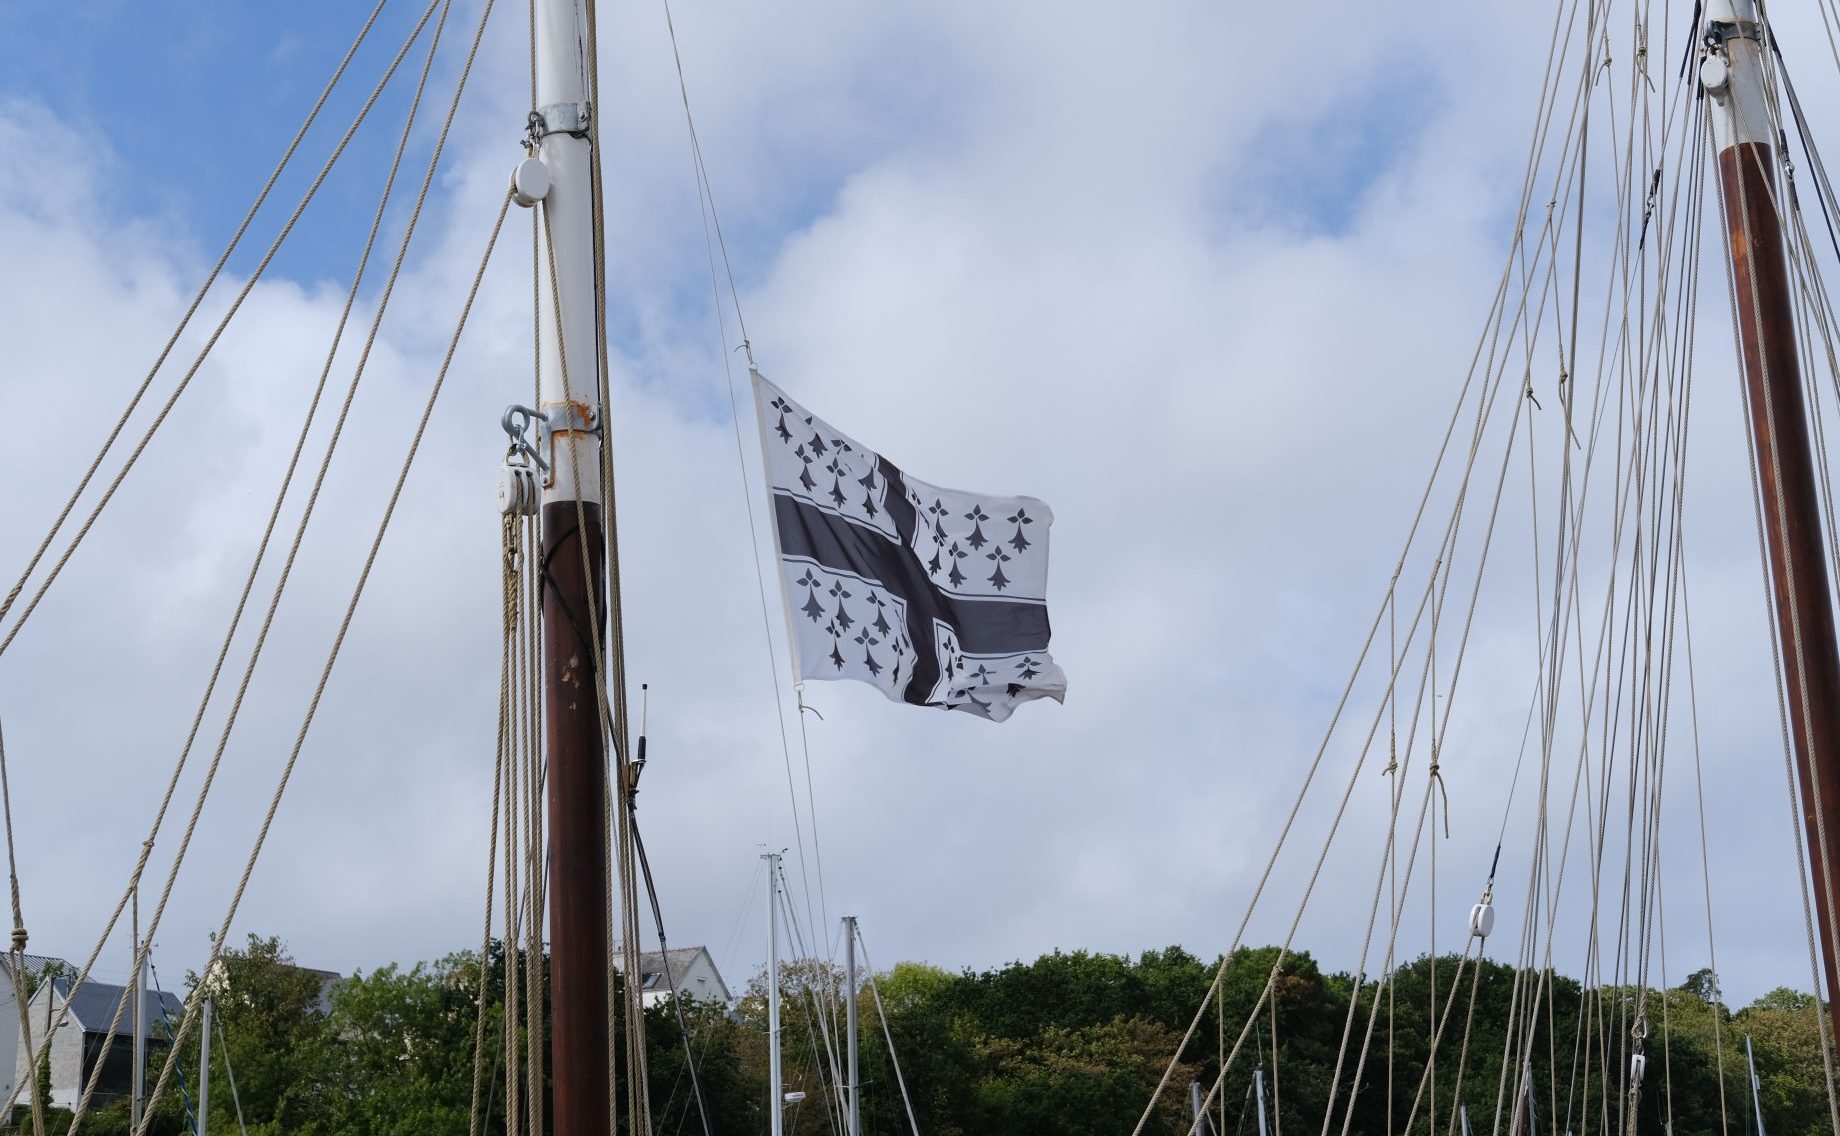 L'autre drapeau breton la Croix Noire ou Kroaz du